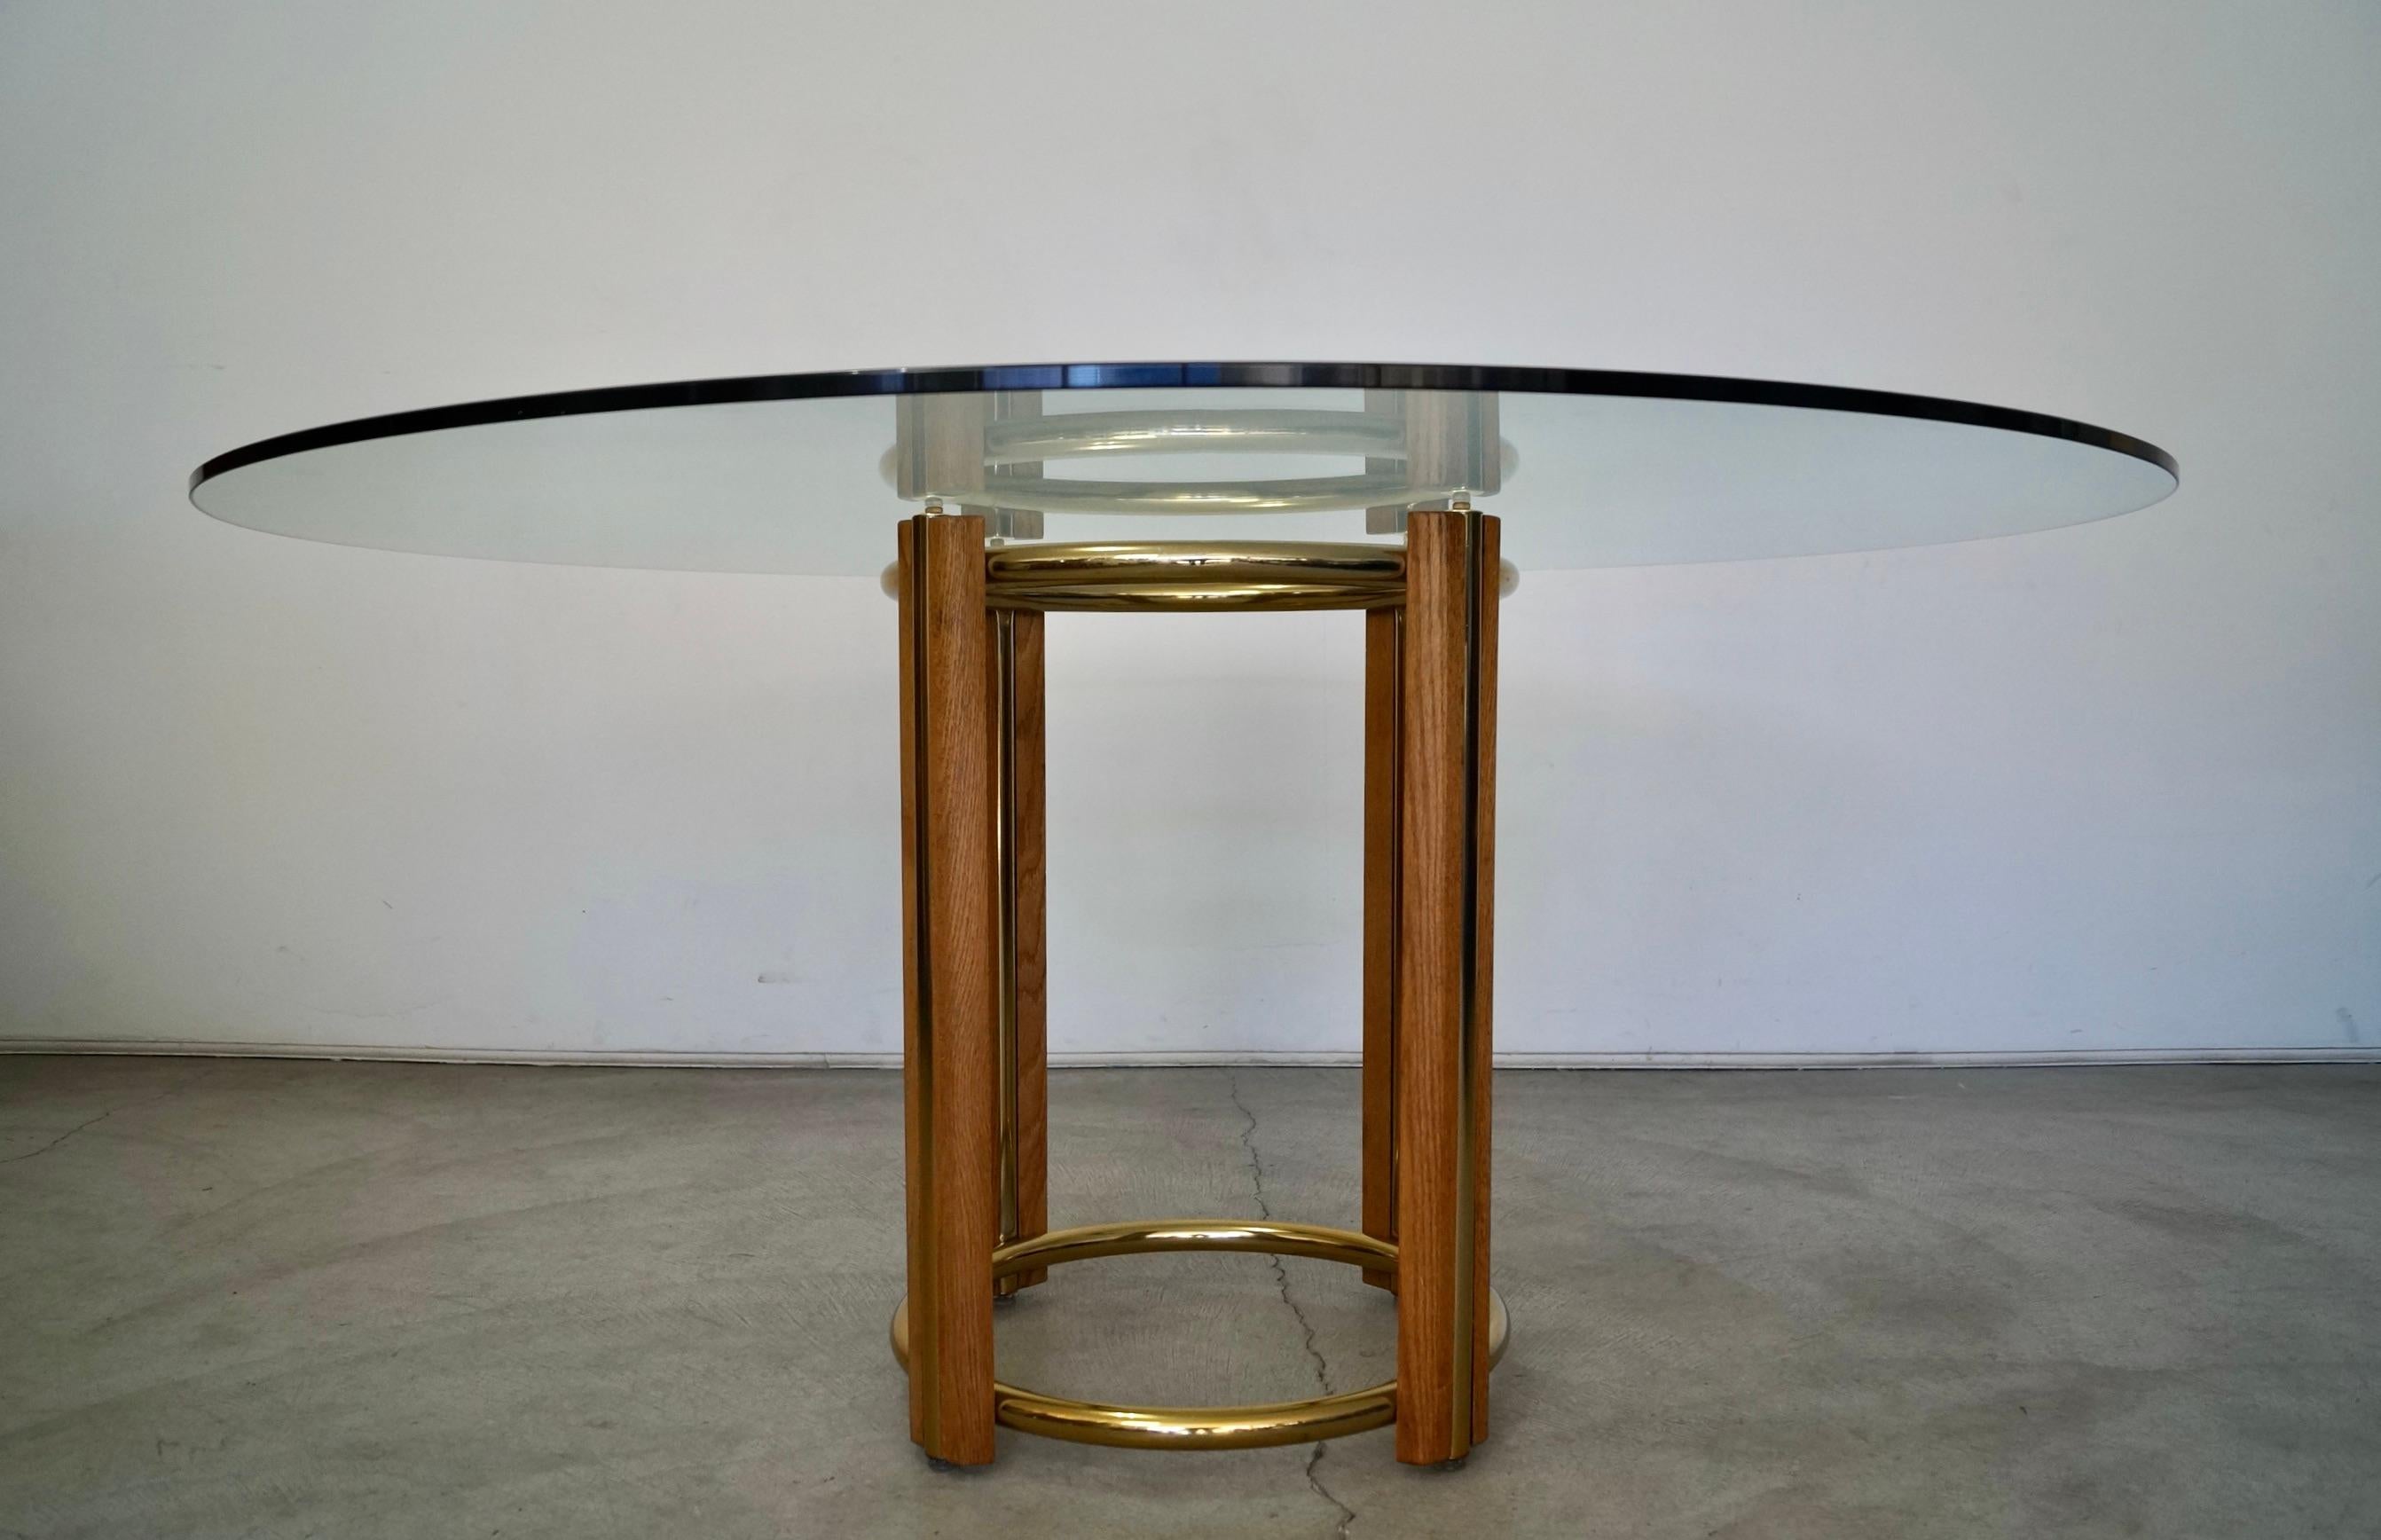 Table de salle à manger Vintage 1970 Mid-Century Modern à vendre. La base est en chêne massif avec des anneaux en laiton et du laiton inséré dans le chêne. Il est doté d'un grand plateau de verre rond d'un demi-pouce d'épaisseur. Cette table est